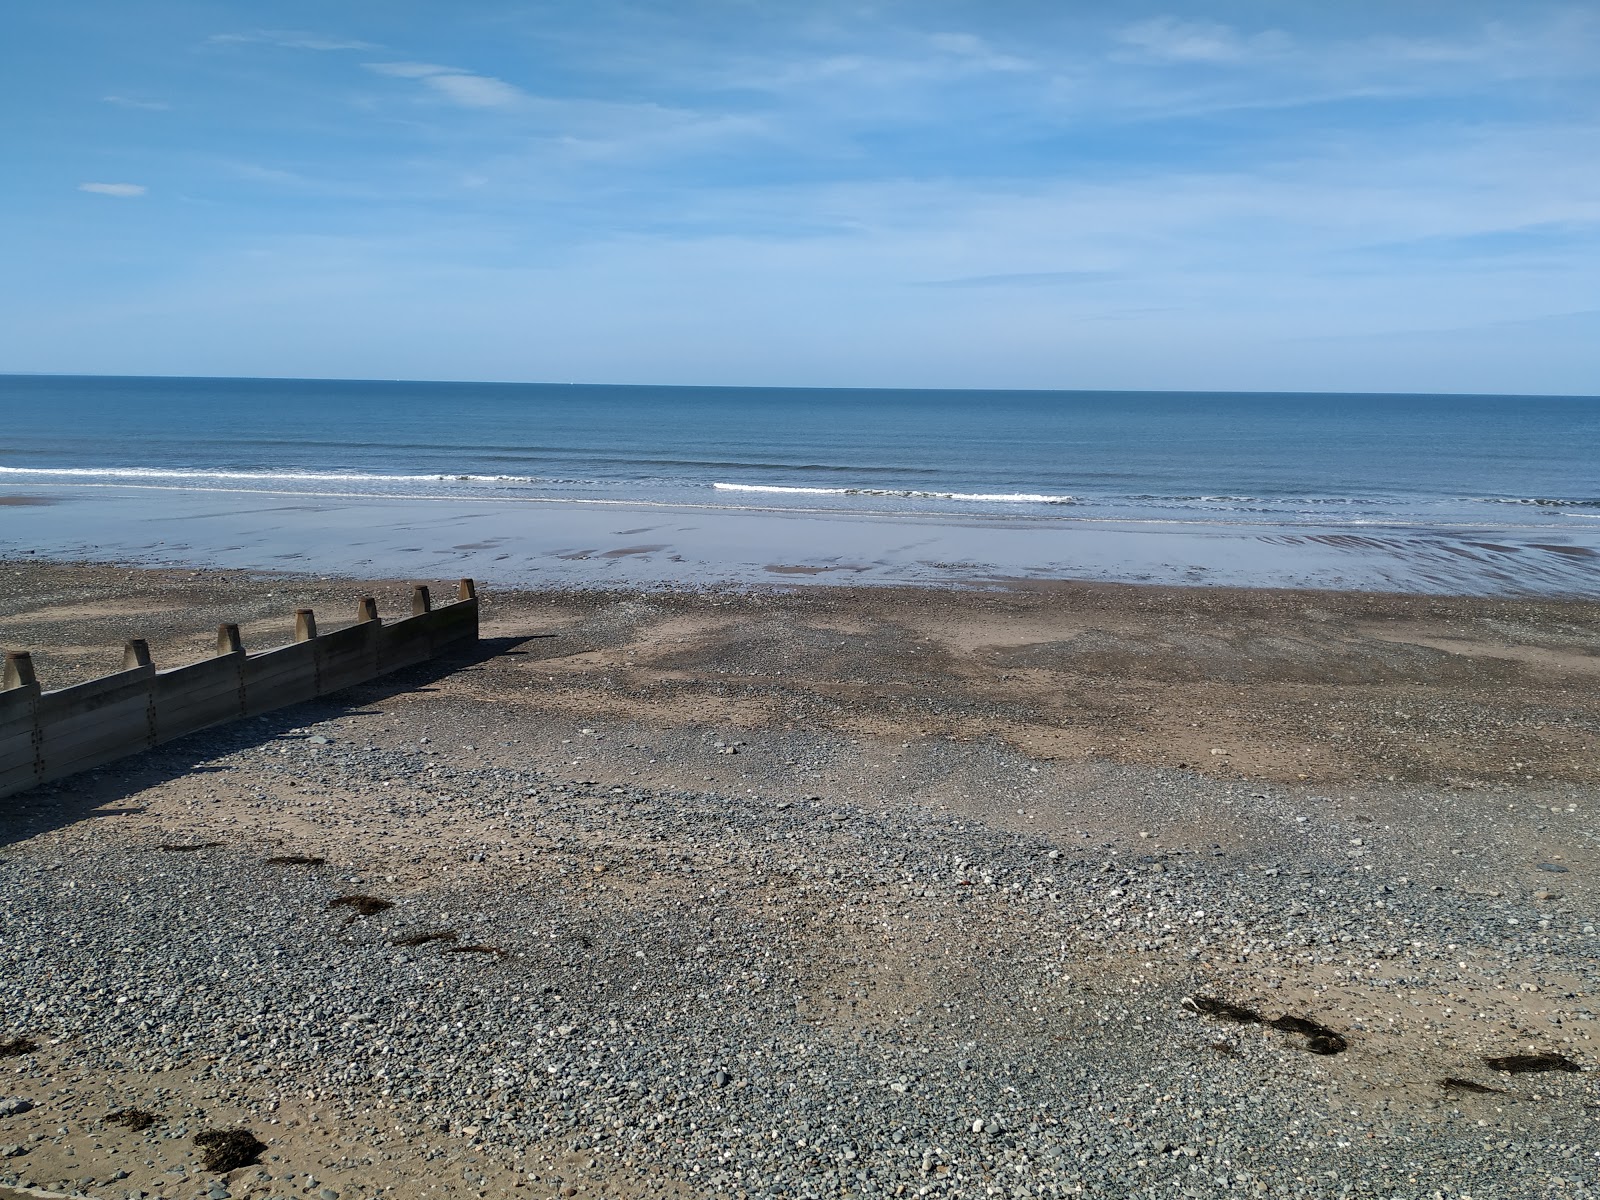 Zdjęcie Tywyn beach obszar udogodnień